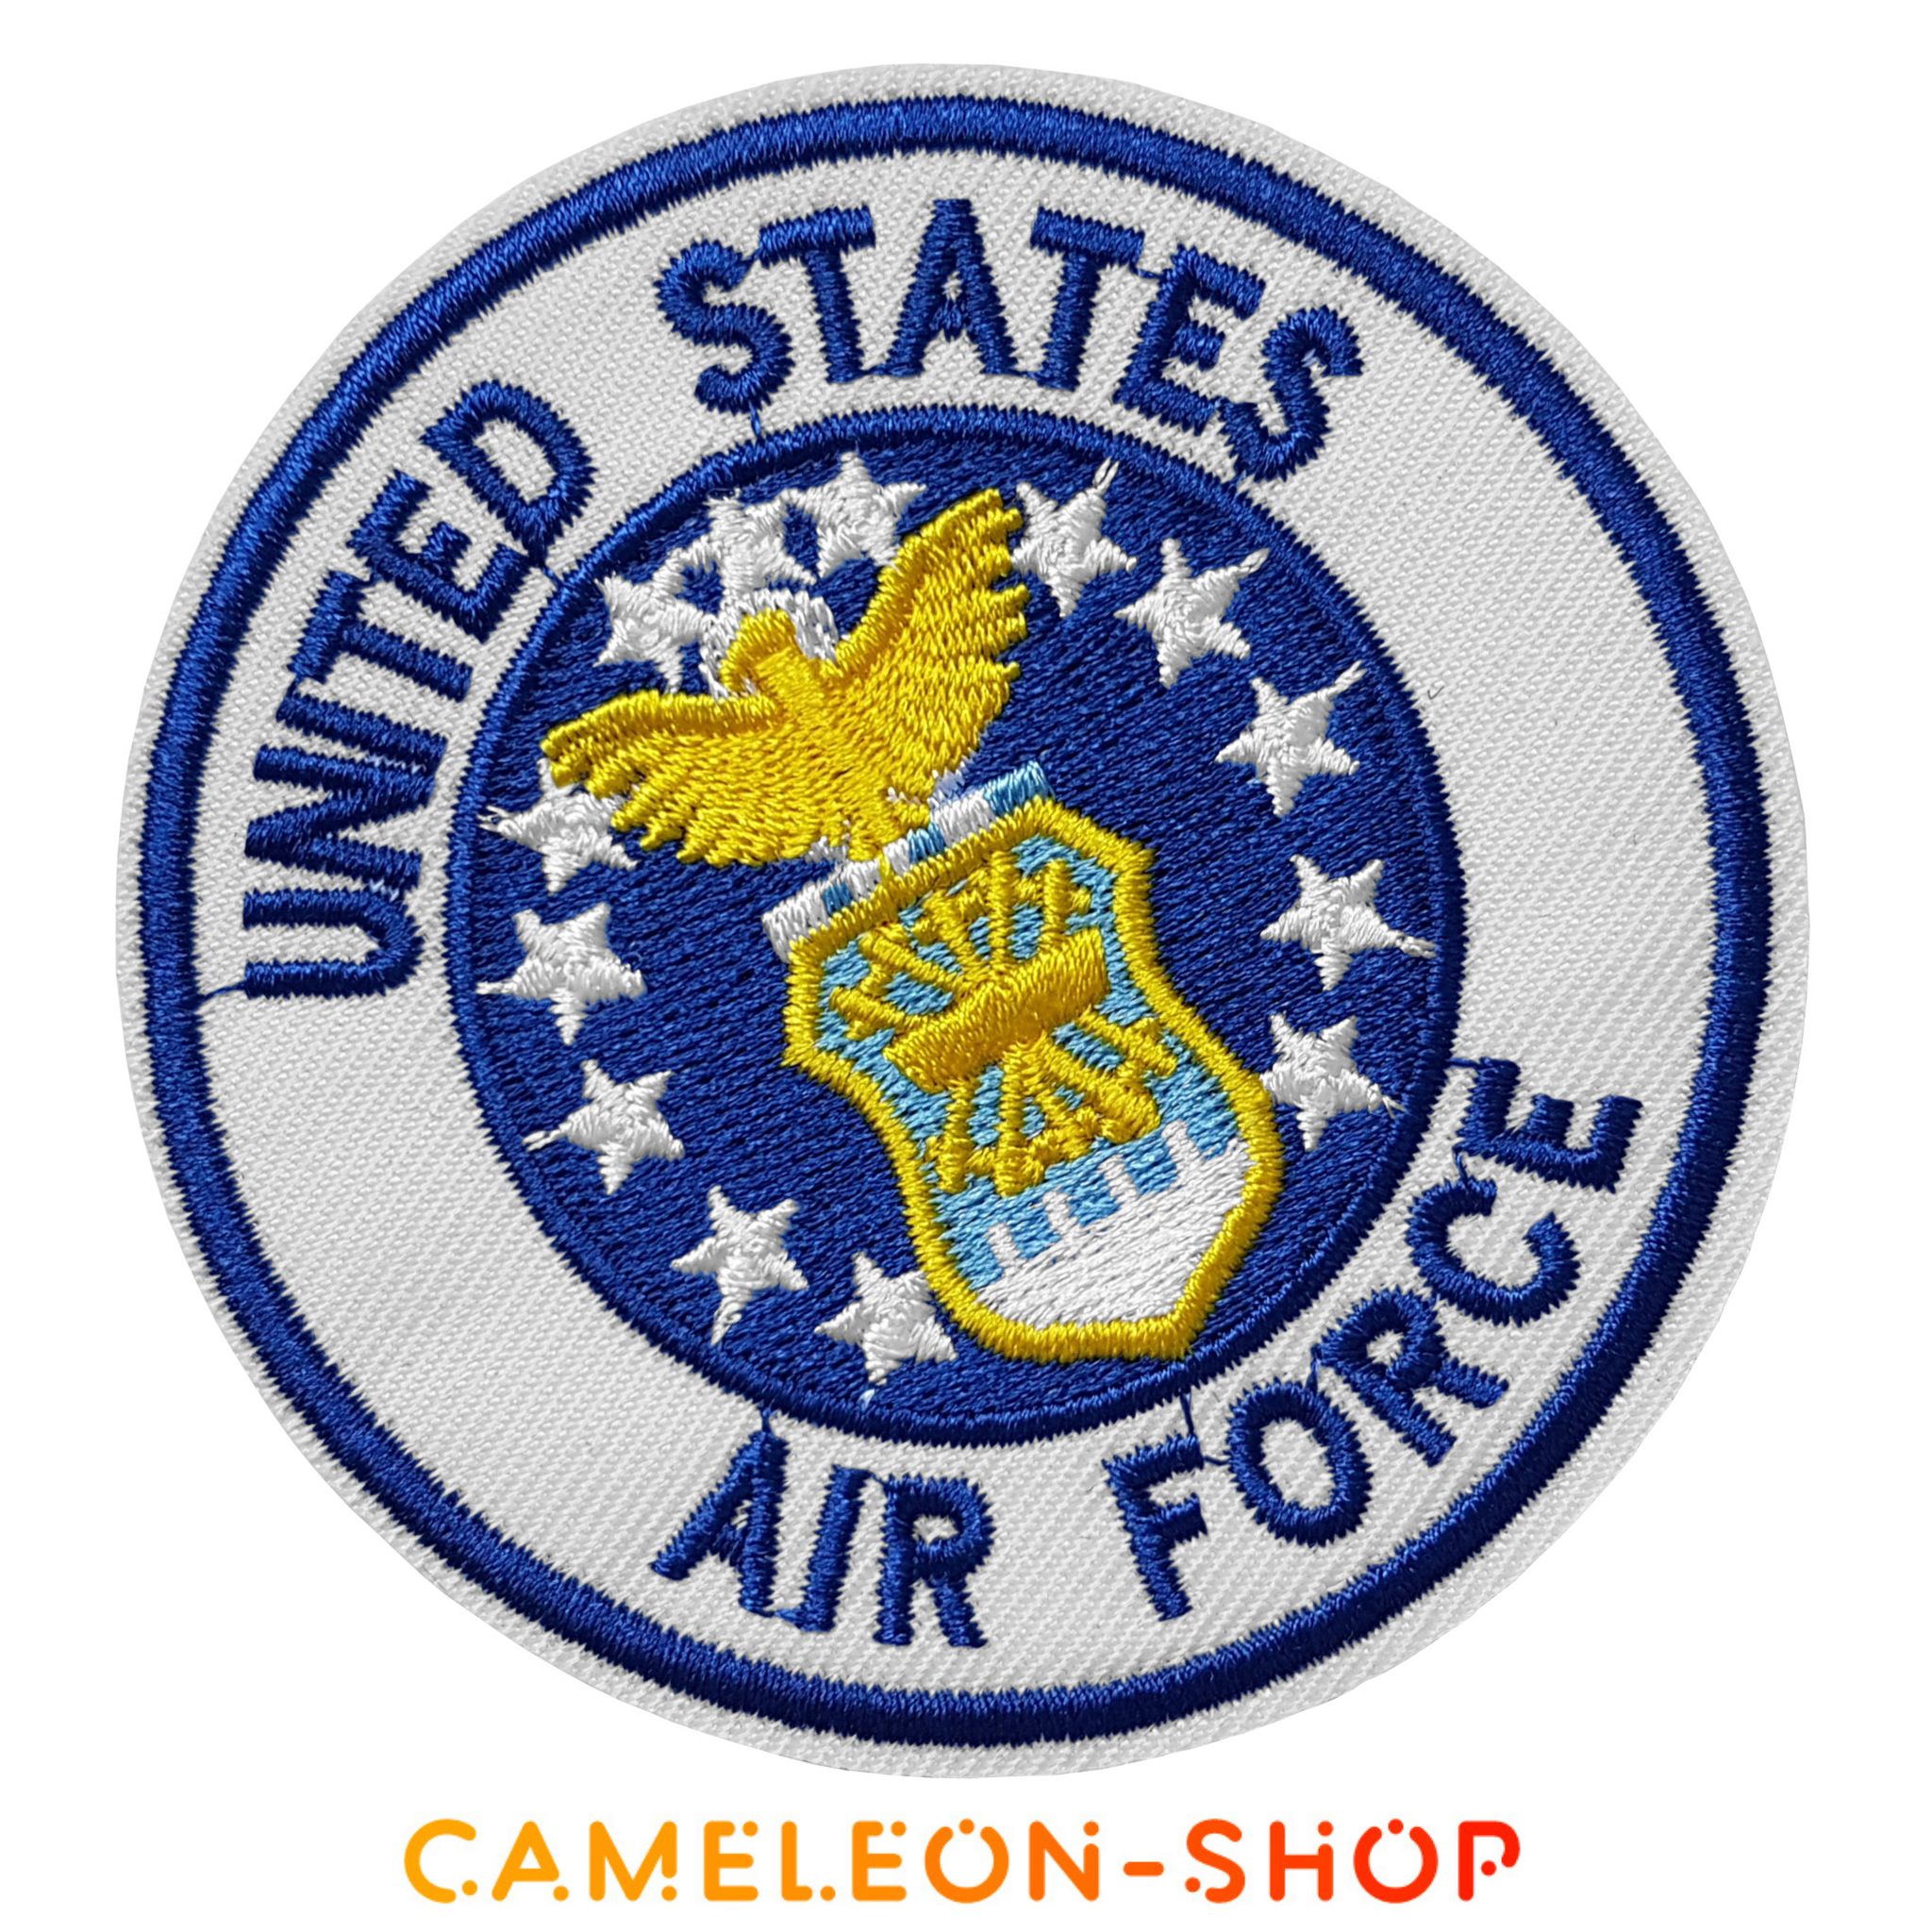 PAT863 - Patch armée de lair United States Air Force 3